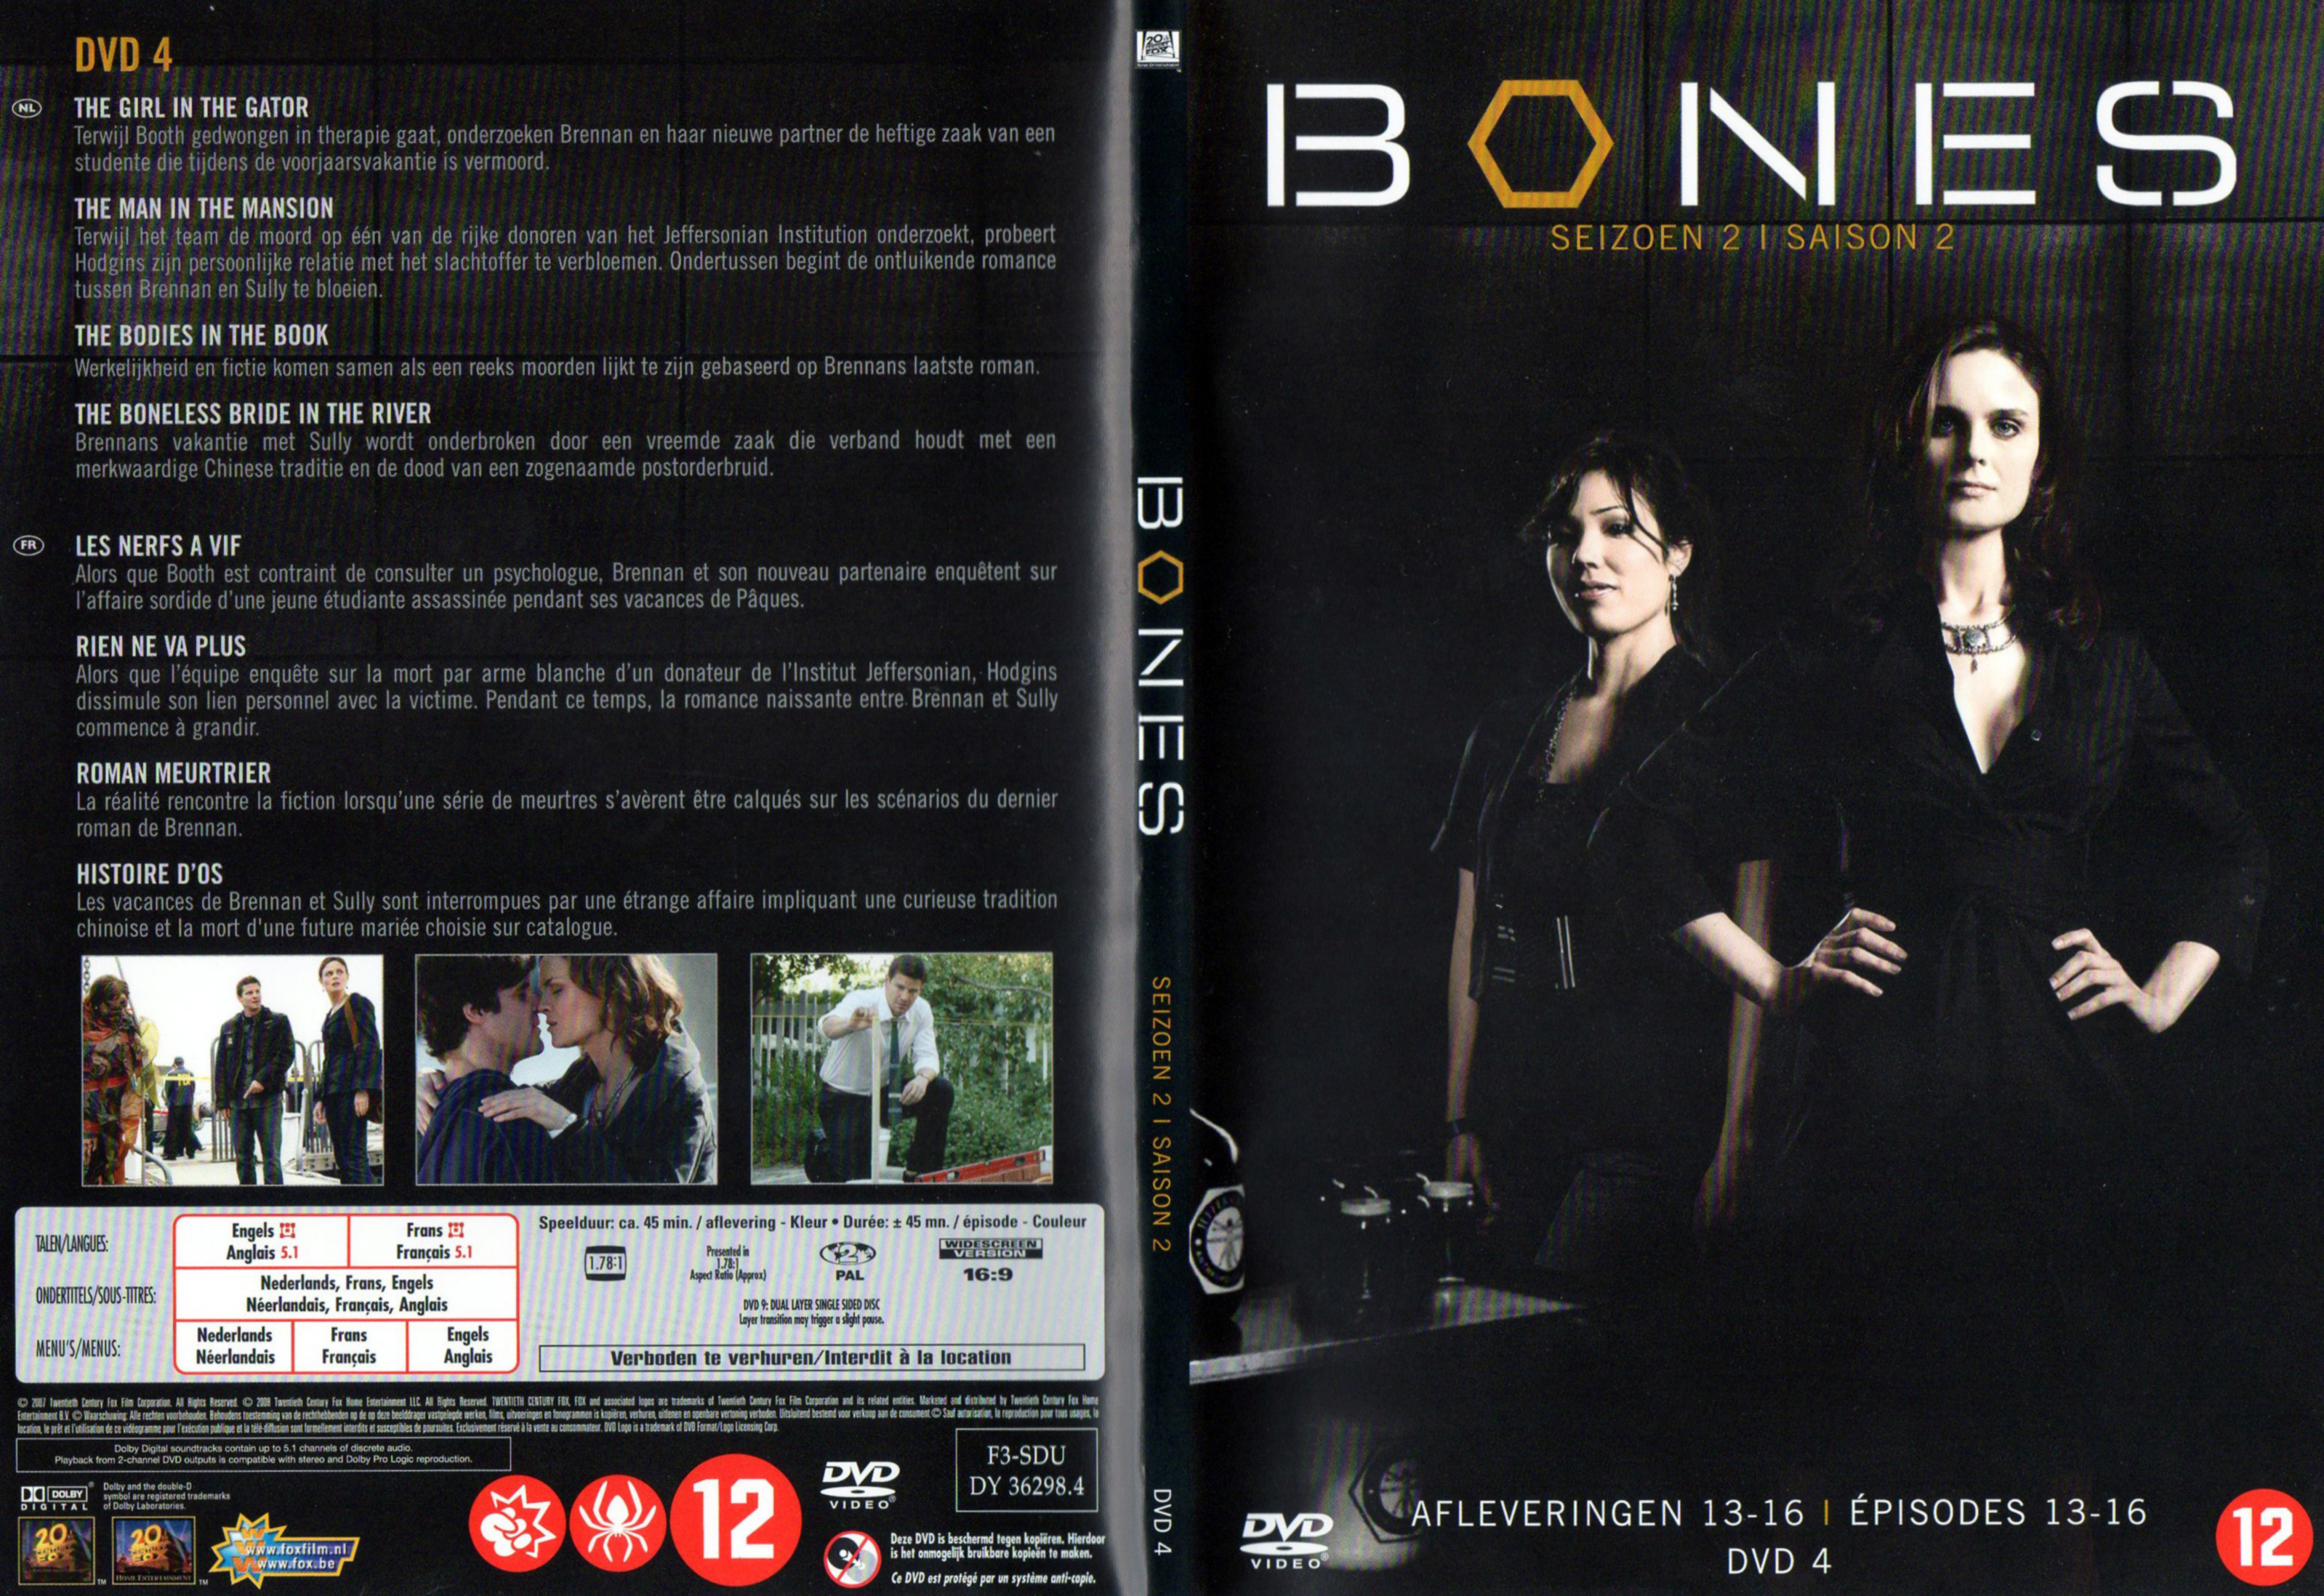 Jaquette DVD Bones Saison 2 DVD 4 v2